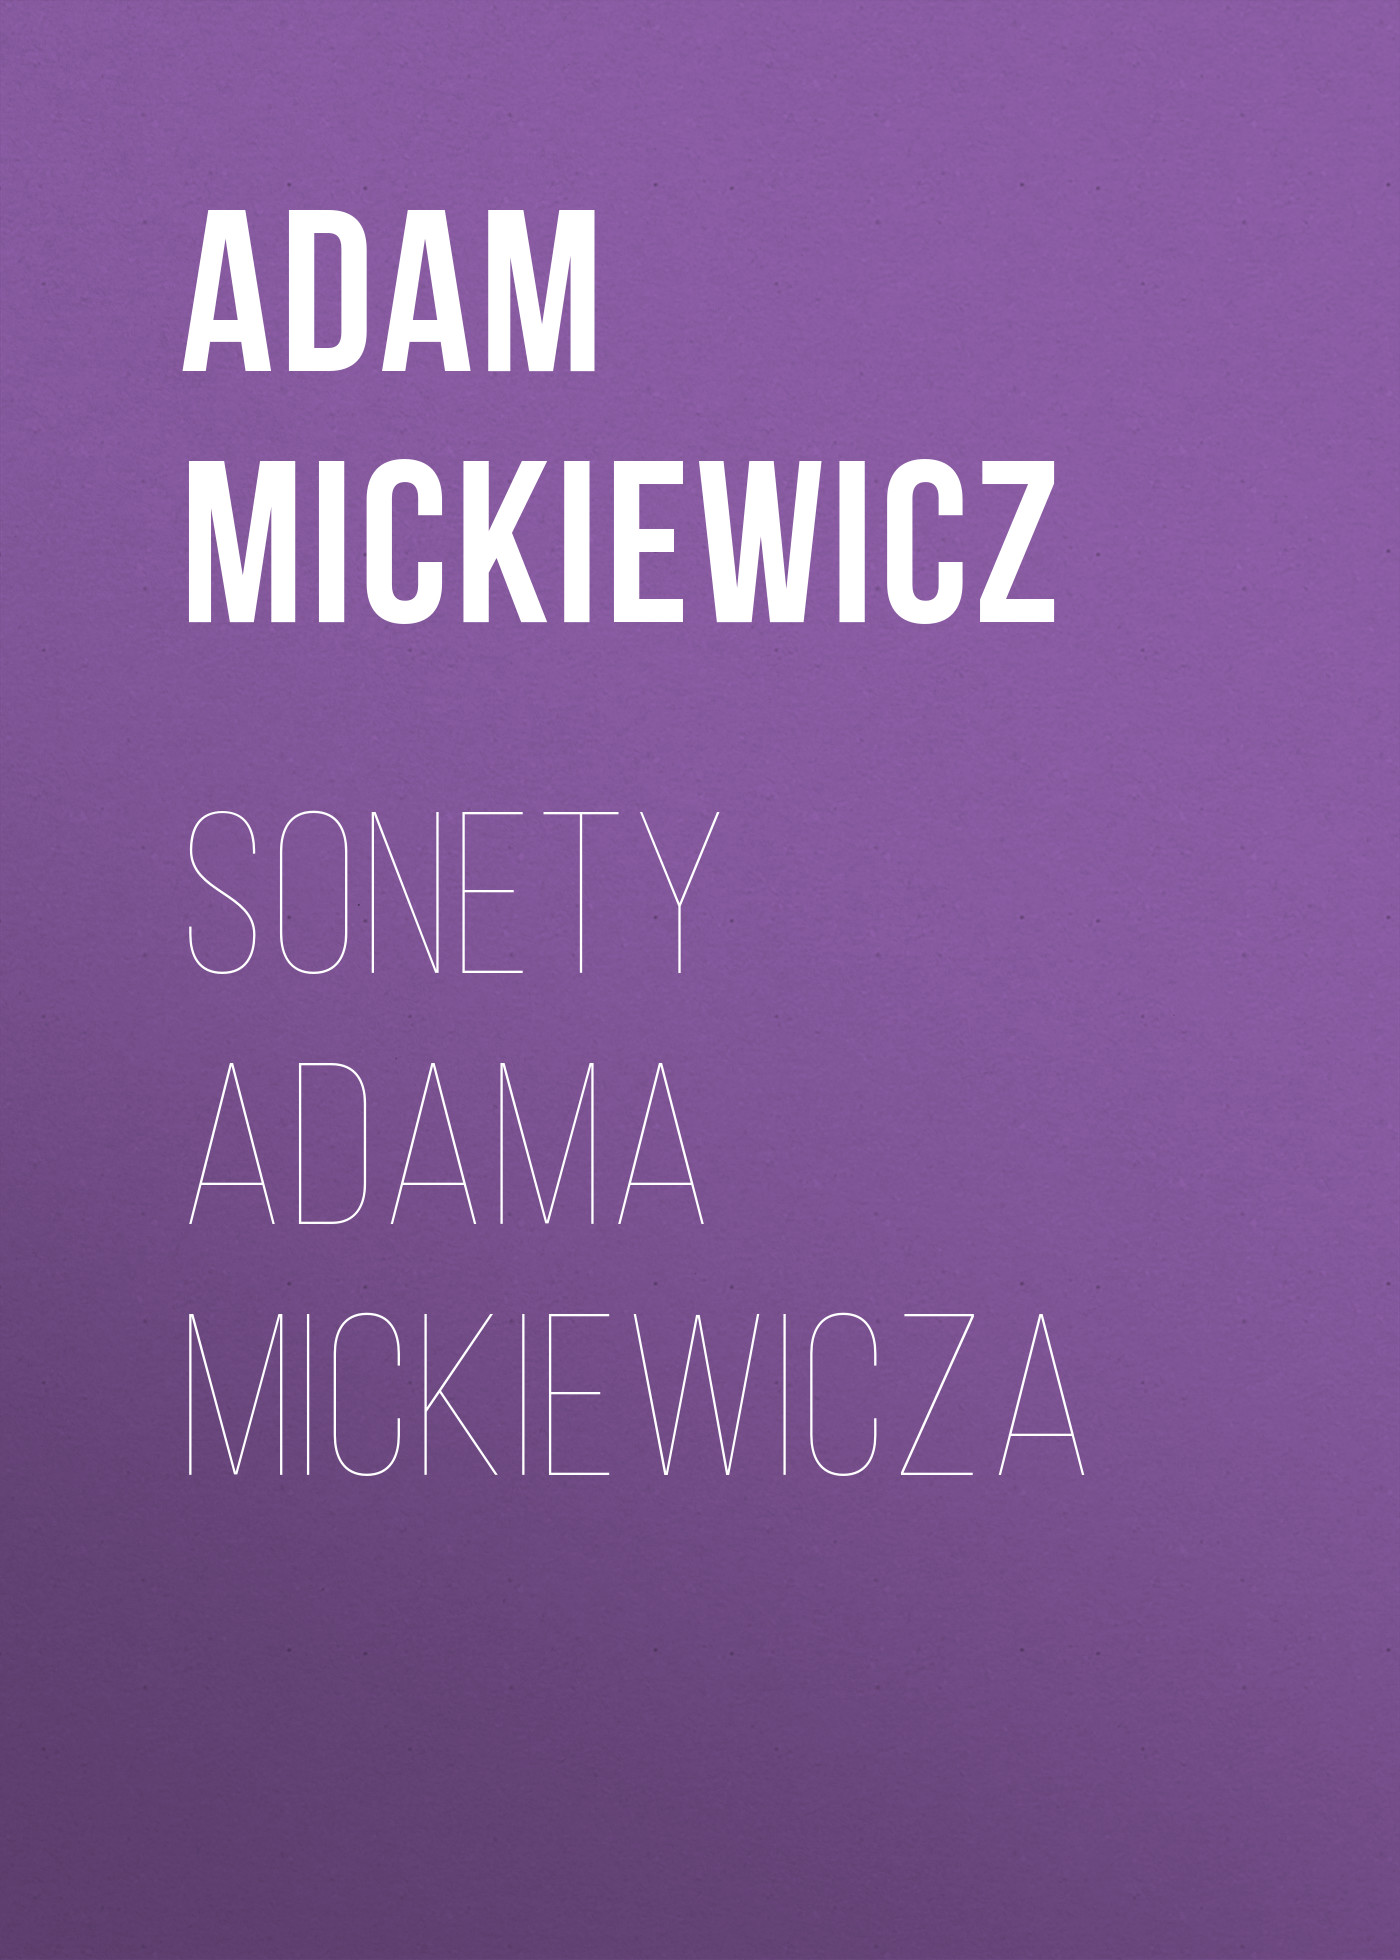 Книга Sonety Adama Mickiewicza из серии , созданная Adam Mickiewicz, может относится к жанру Зарубежные стихи, Литература 19 века, Поэзия, Зарубежная старинная литература, Зарубежная классика. Стоимость электронной книги Sonety Adama Mickiewicza с идентификатором 42627547 составляет 0 руб.